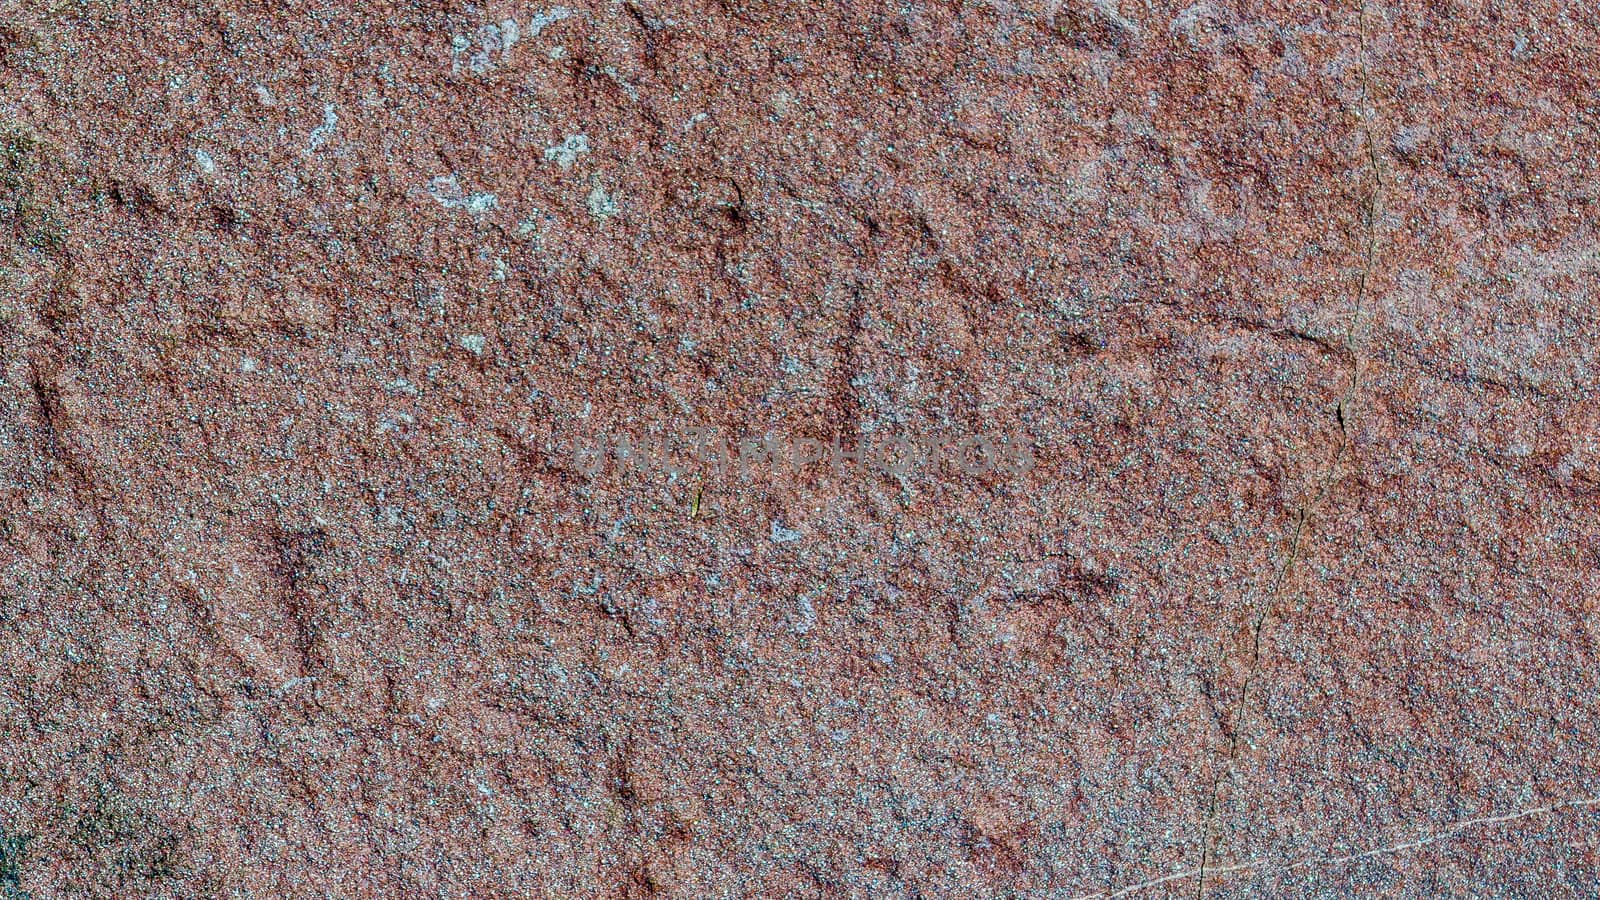 Rough basalt texture.